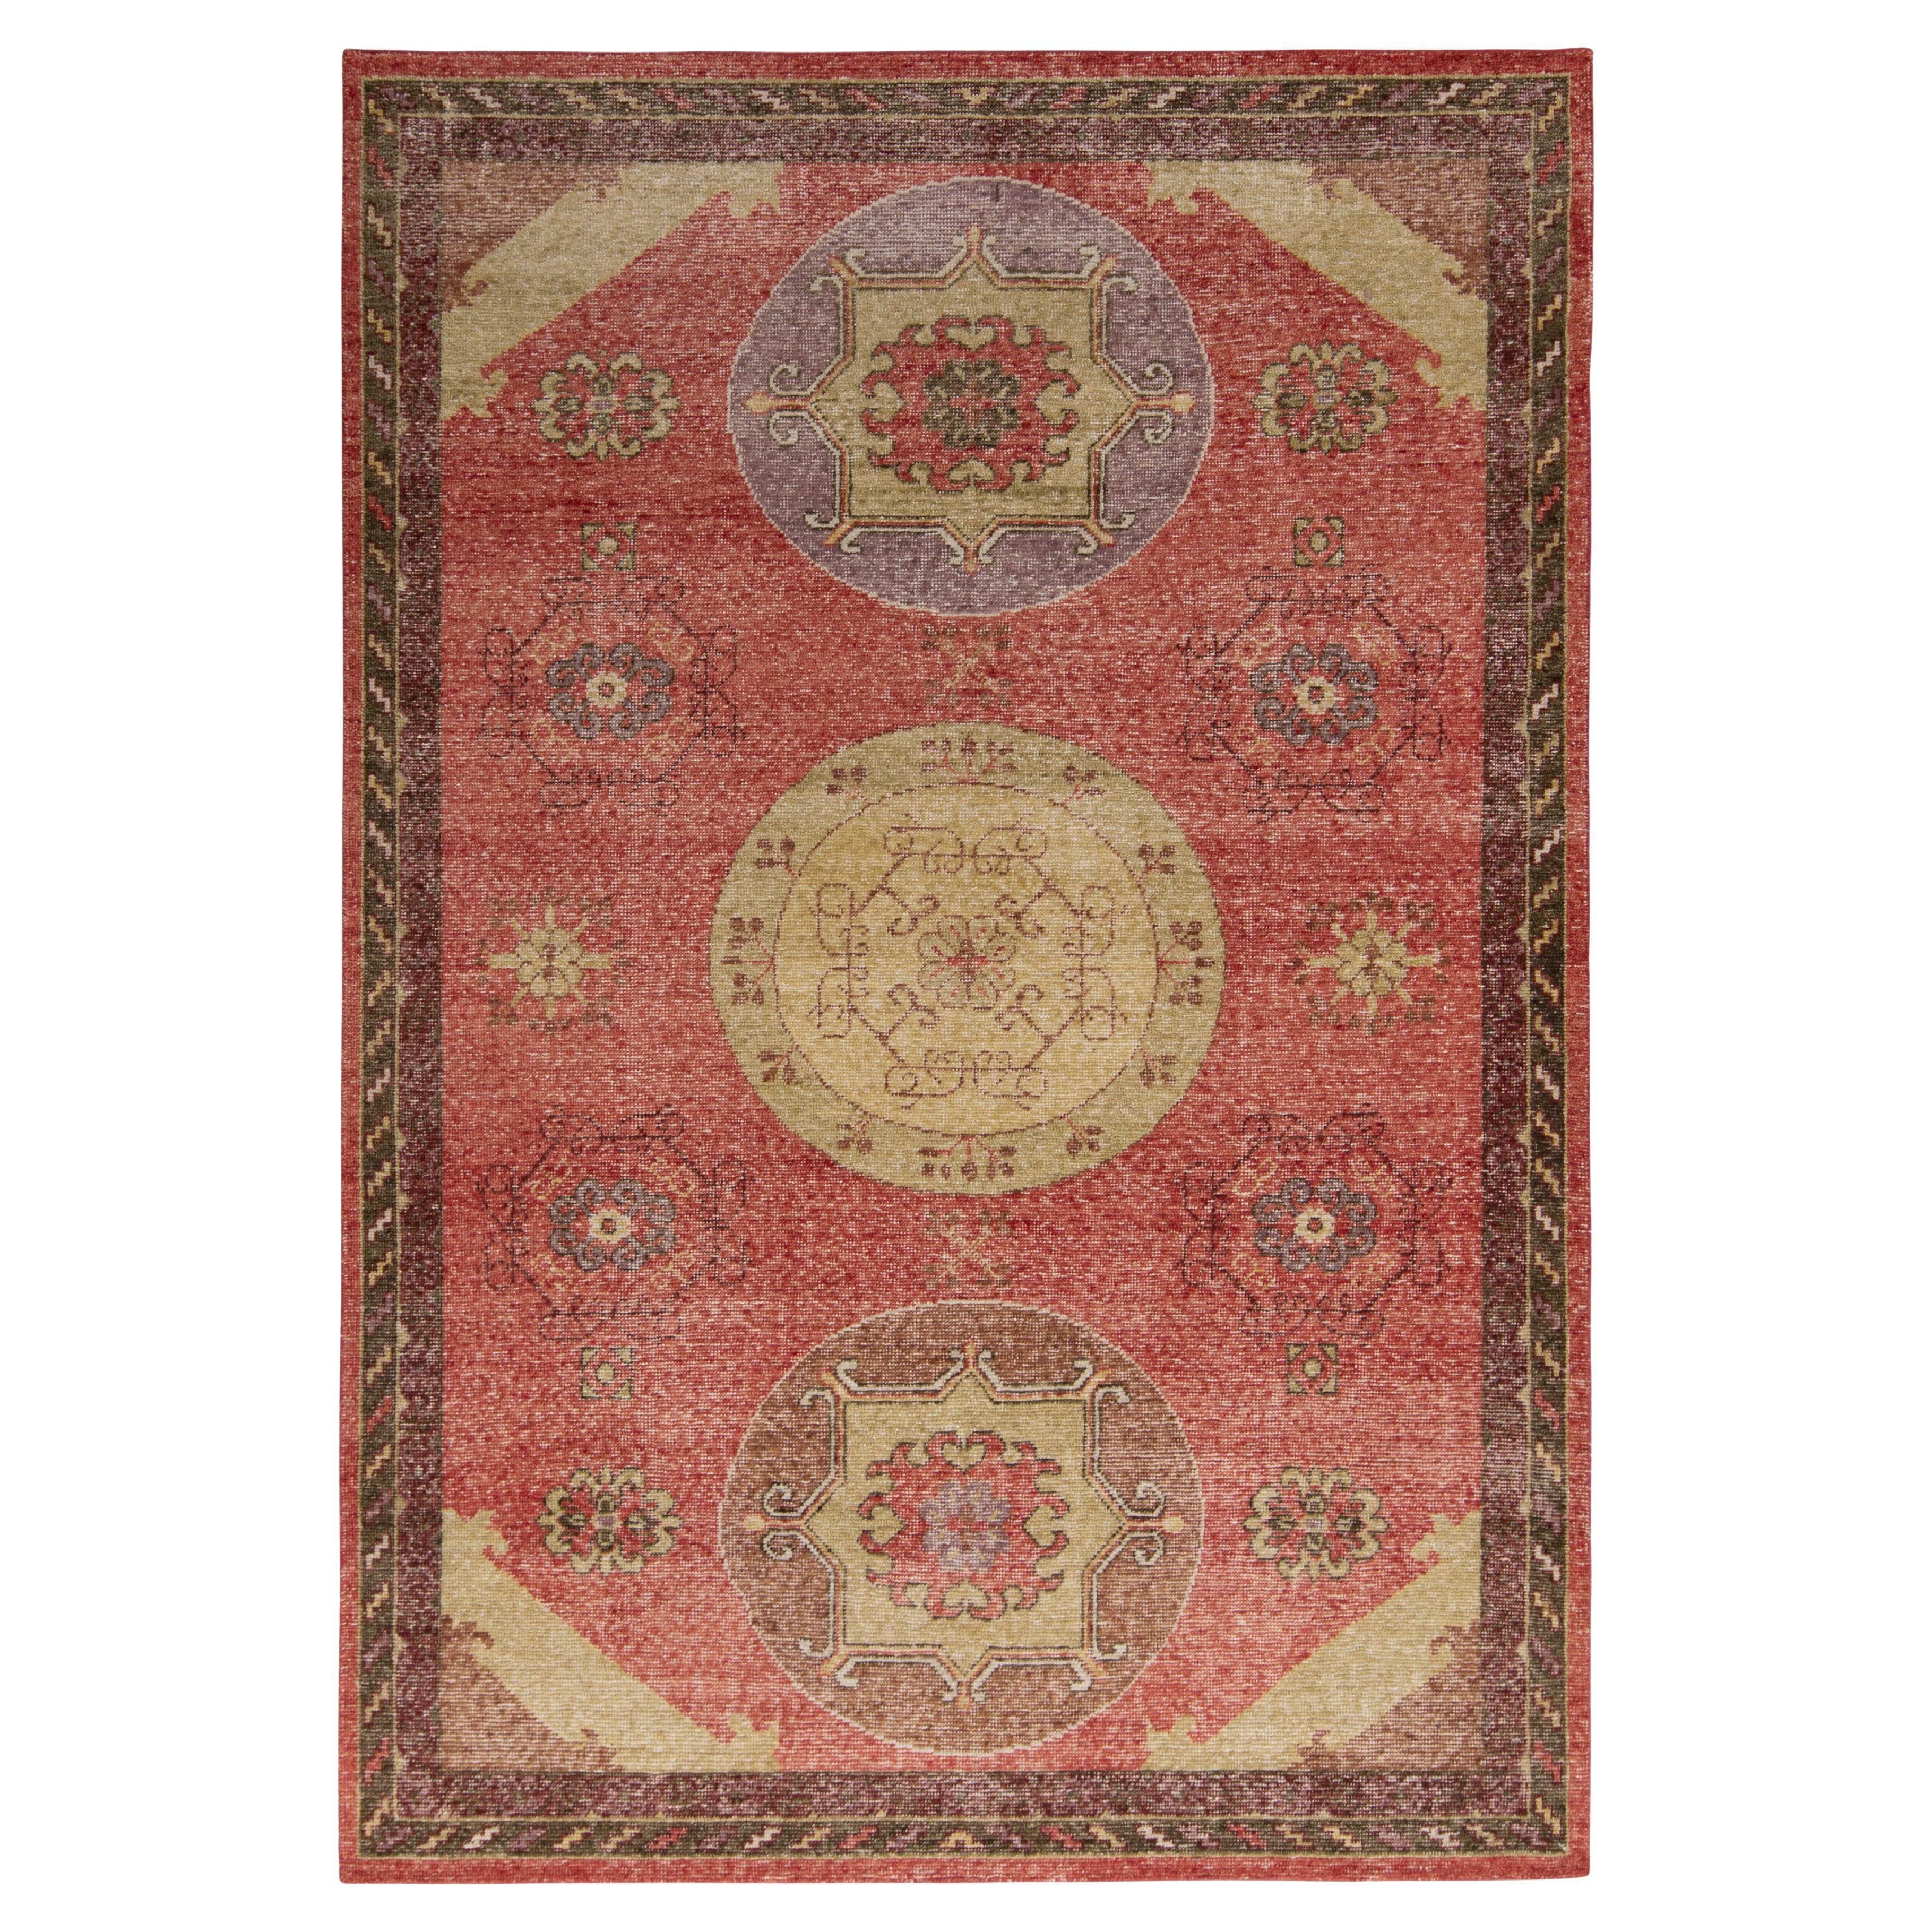 Teppich & Kilims, gealterter Teppich im Khotan-Stil mit rotem, beige-braunem Medaillonmuster